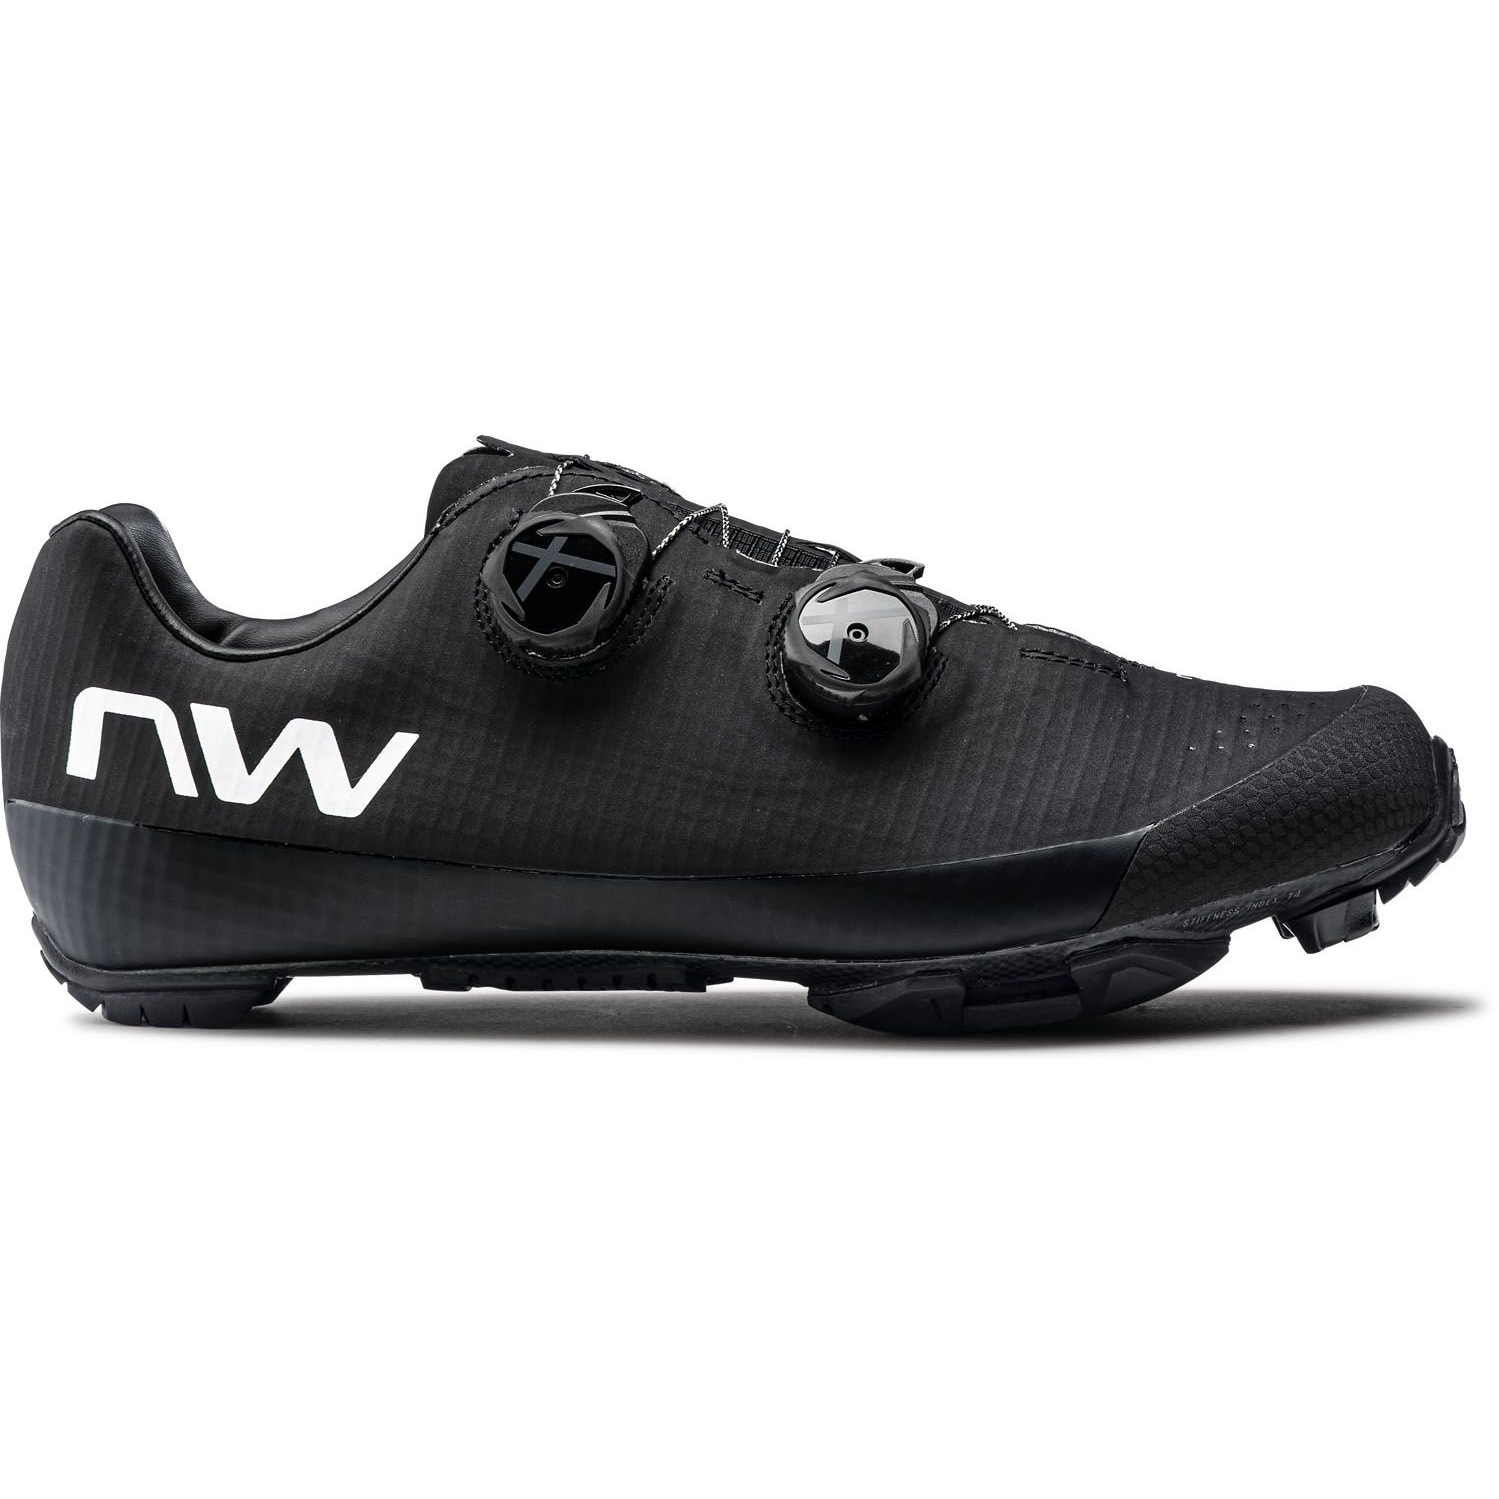 Produktbild von Northwave Extreme XC 2 MTB Schuhe - schwarz 10